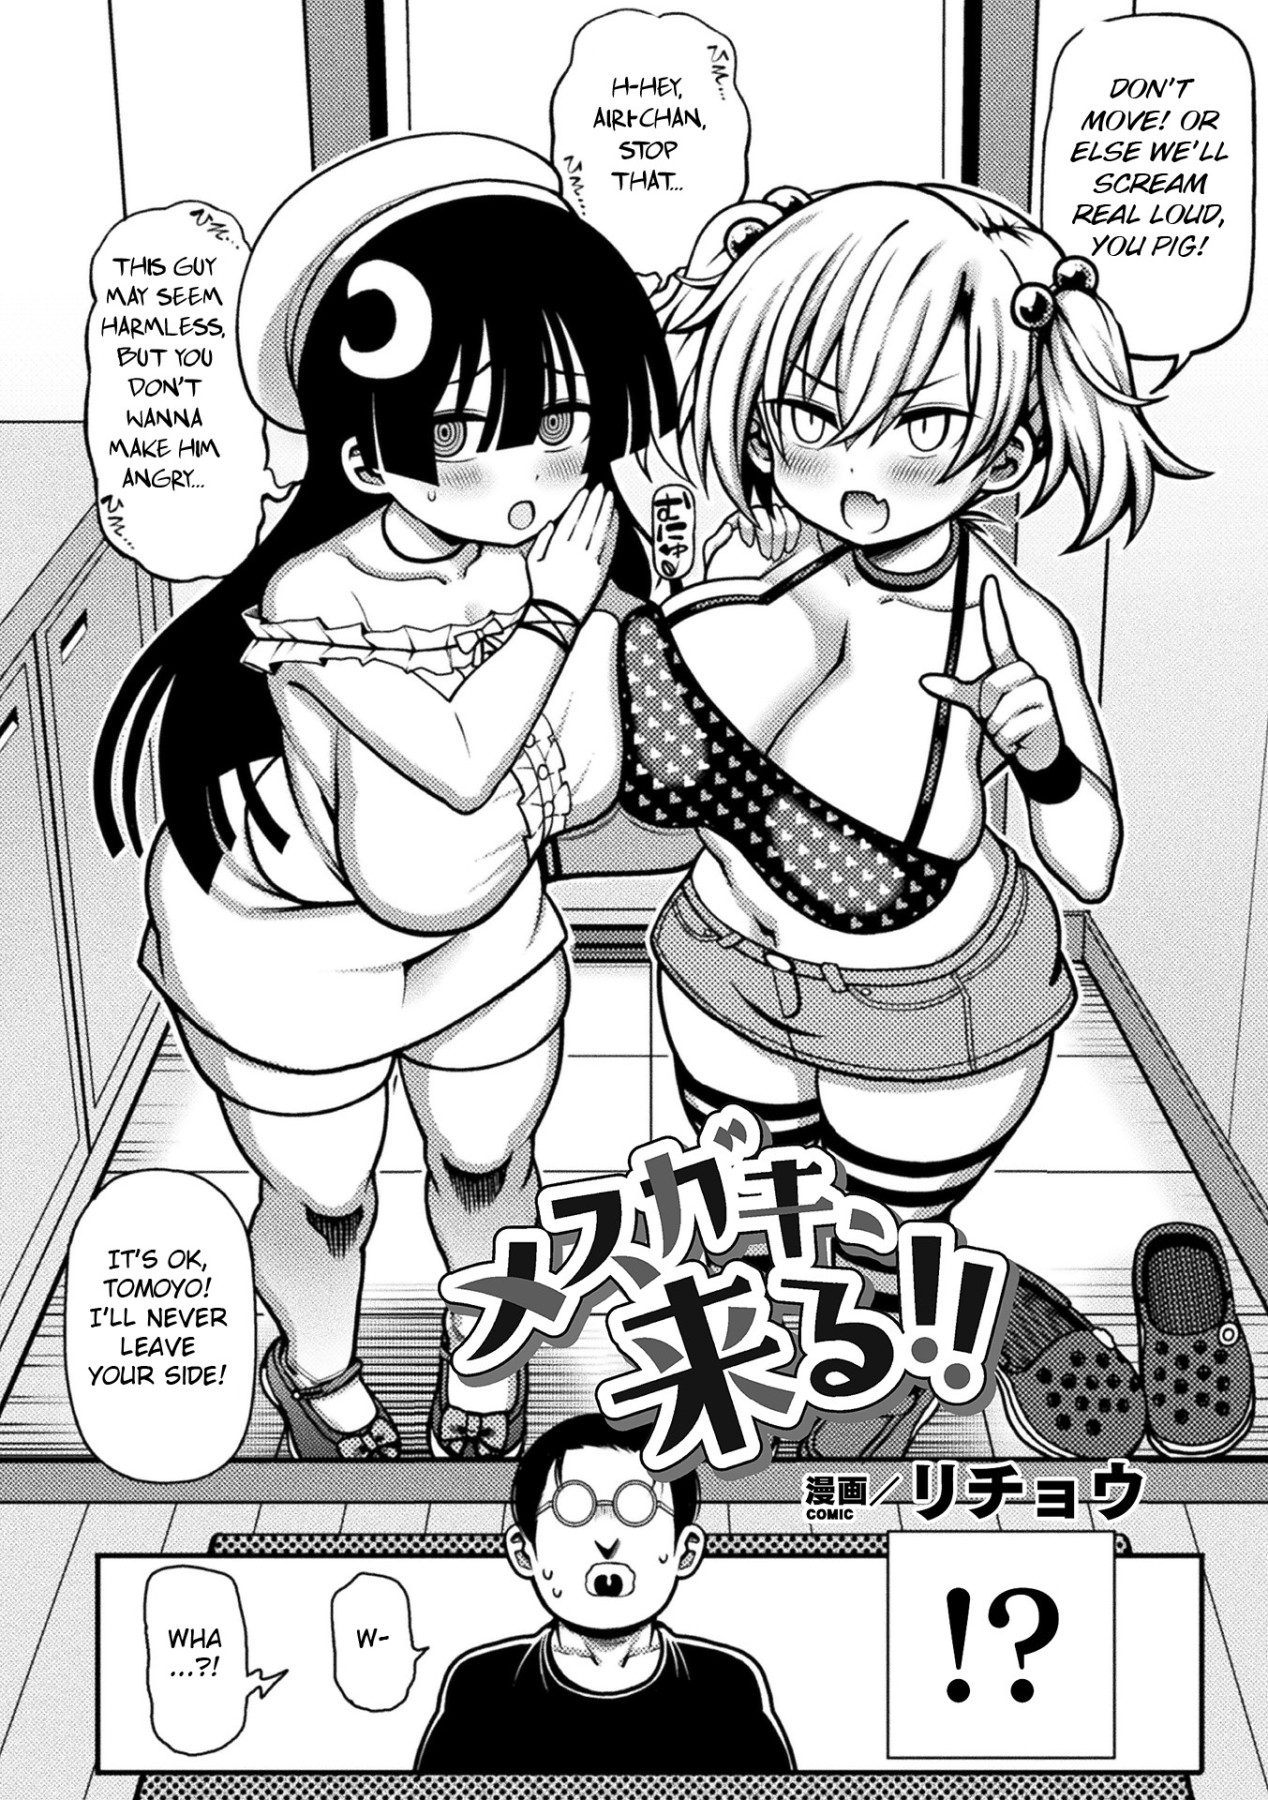 Hentai Manga Comic-Here Comes The Horny Girls!-Read-2